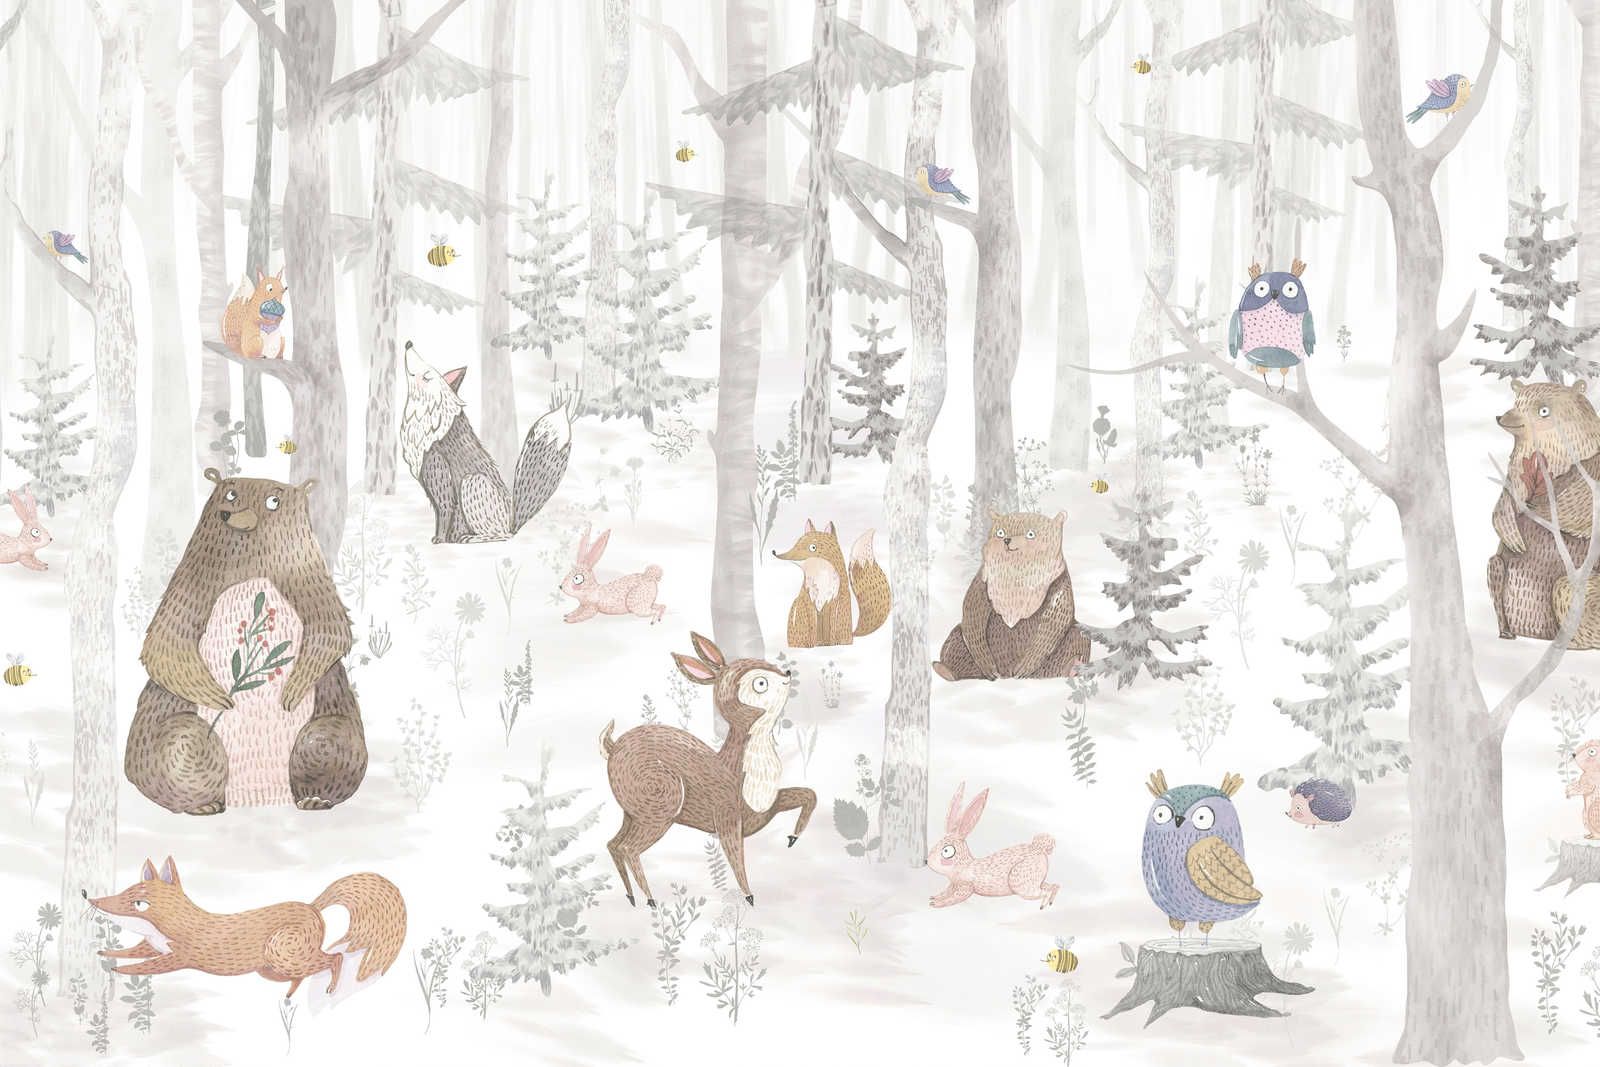             Toile Forêt enchantée avec animaux - 90 cm x 60 cm
        